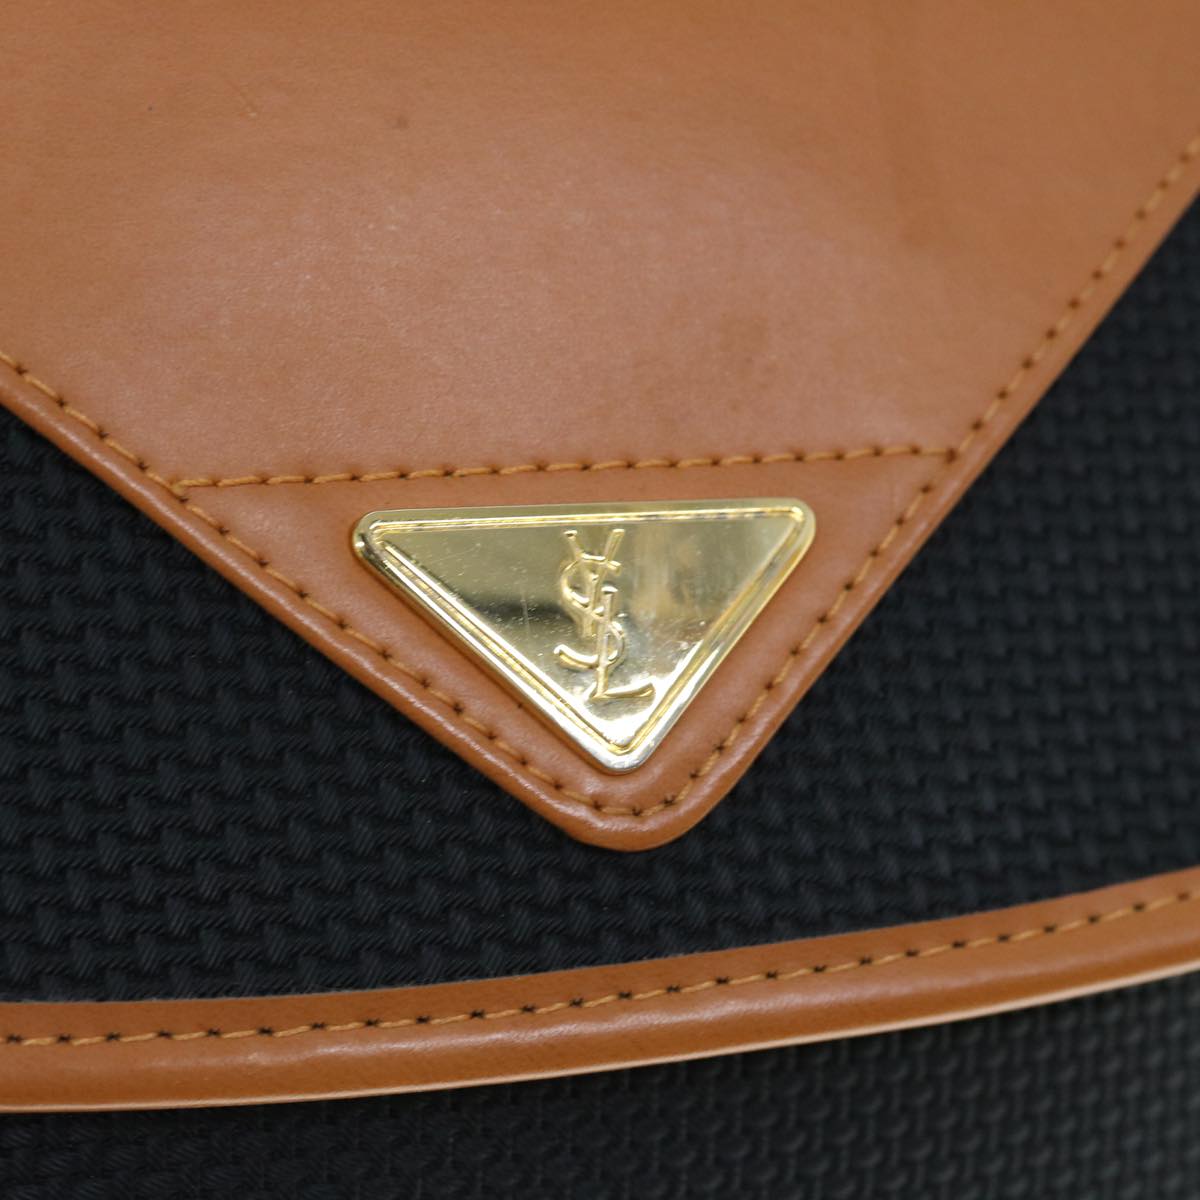 SAINT LAURENT Shoulder Bag PVC Leather Black Auth am5482